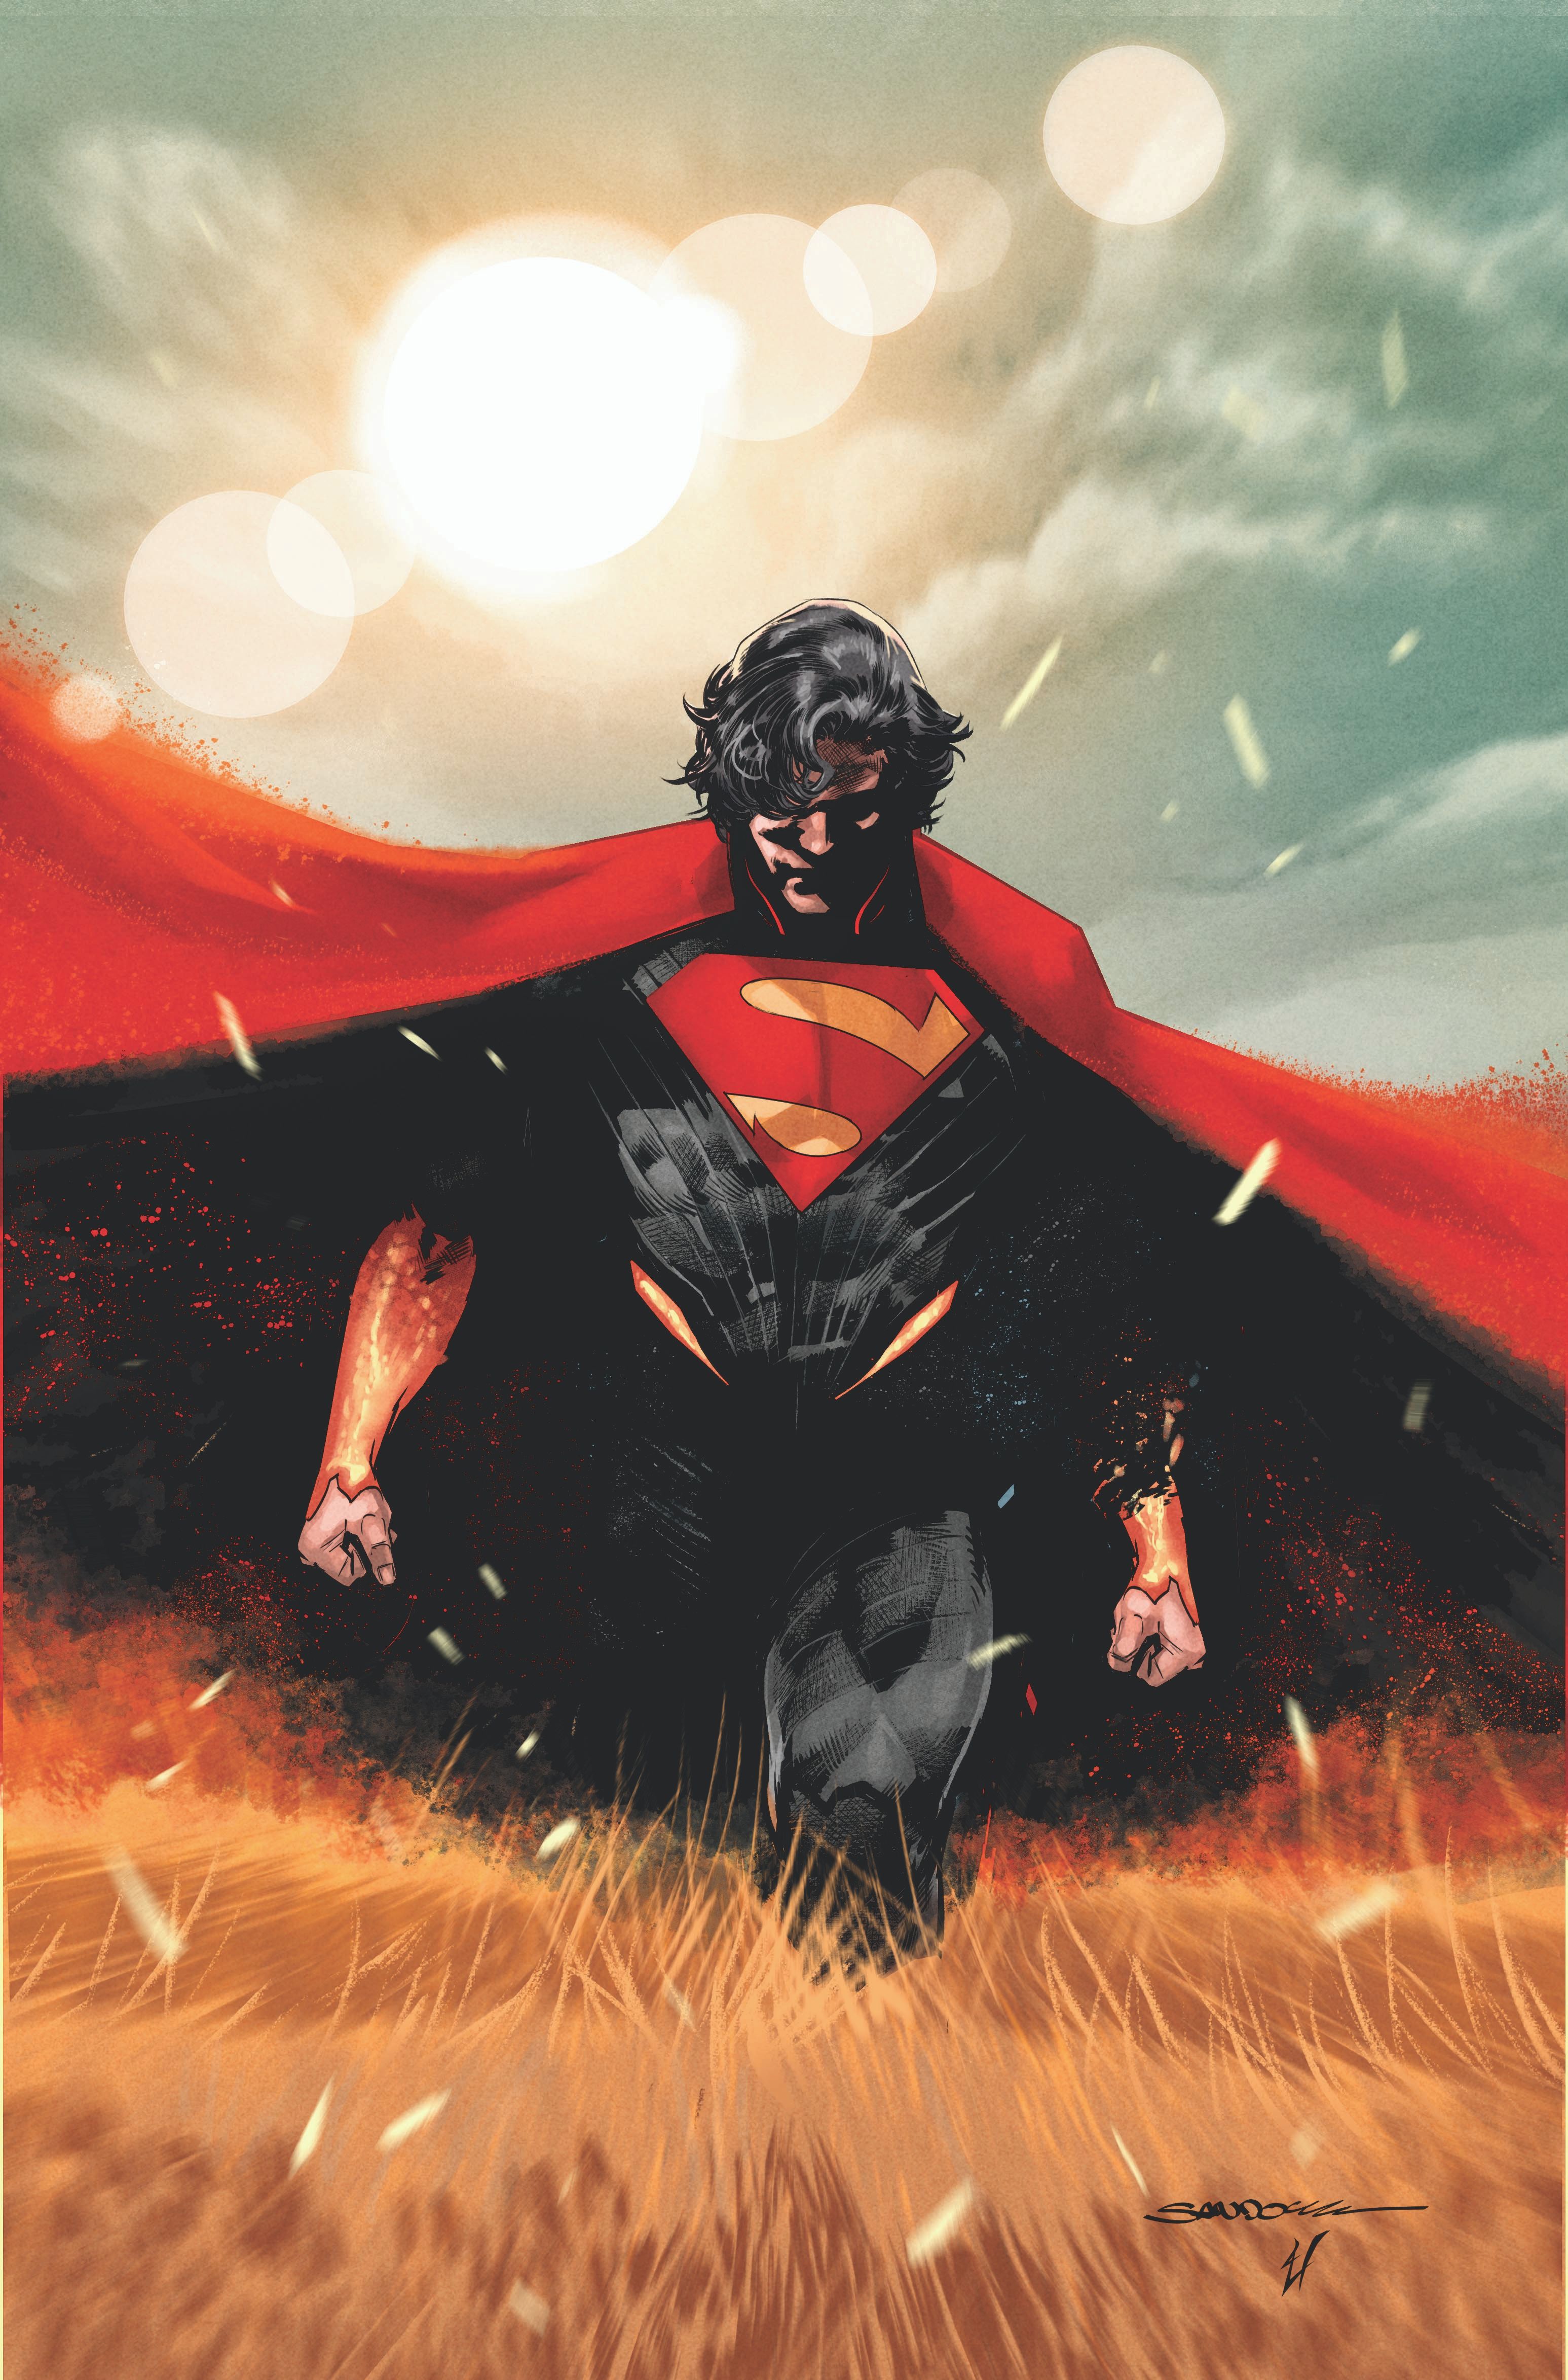 Capa principal do Absolute Superman 1: Superman com cabelo comprido caminha por um campo.